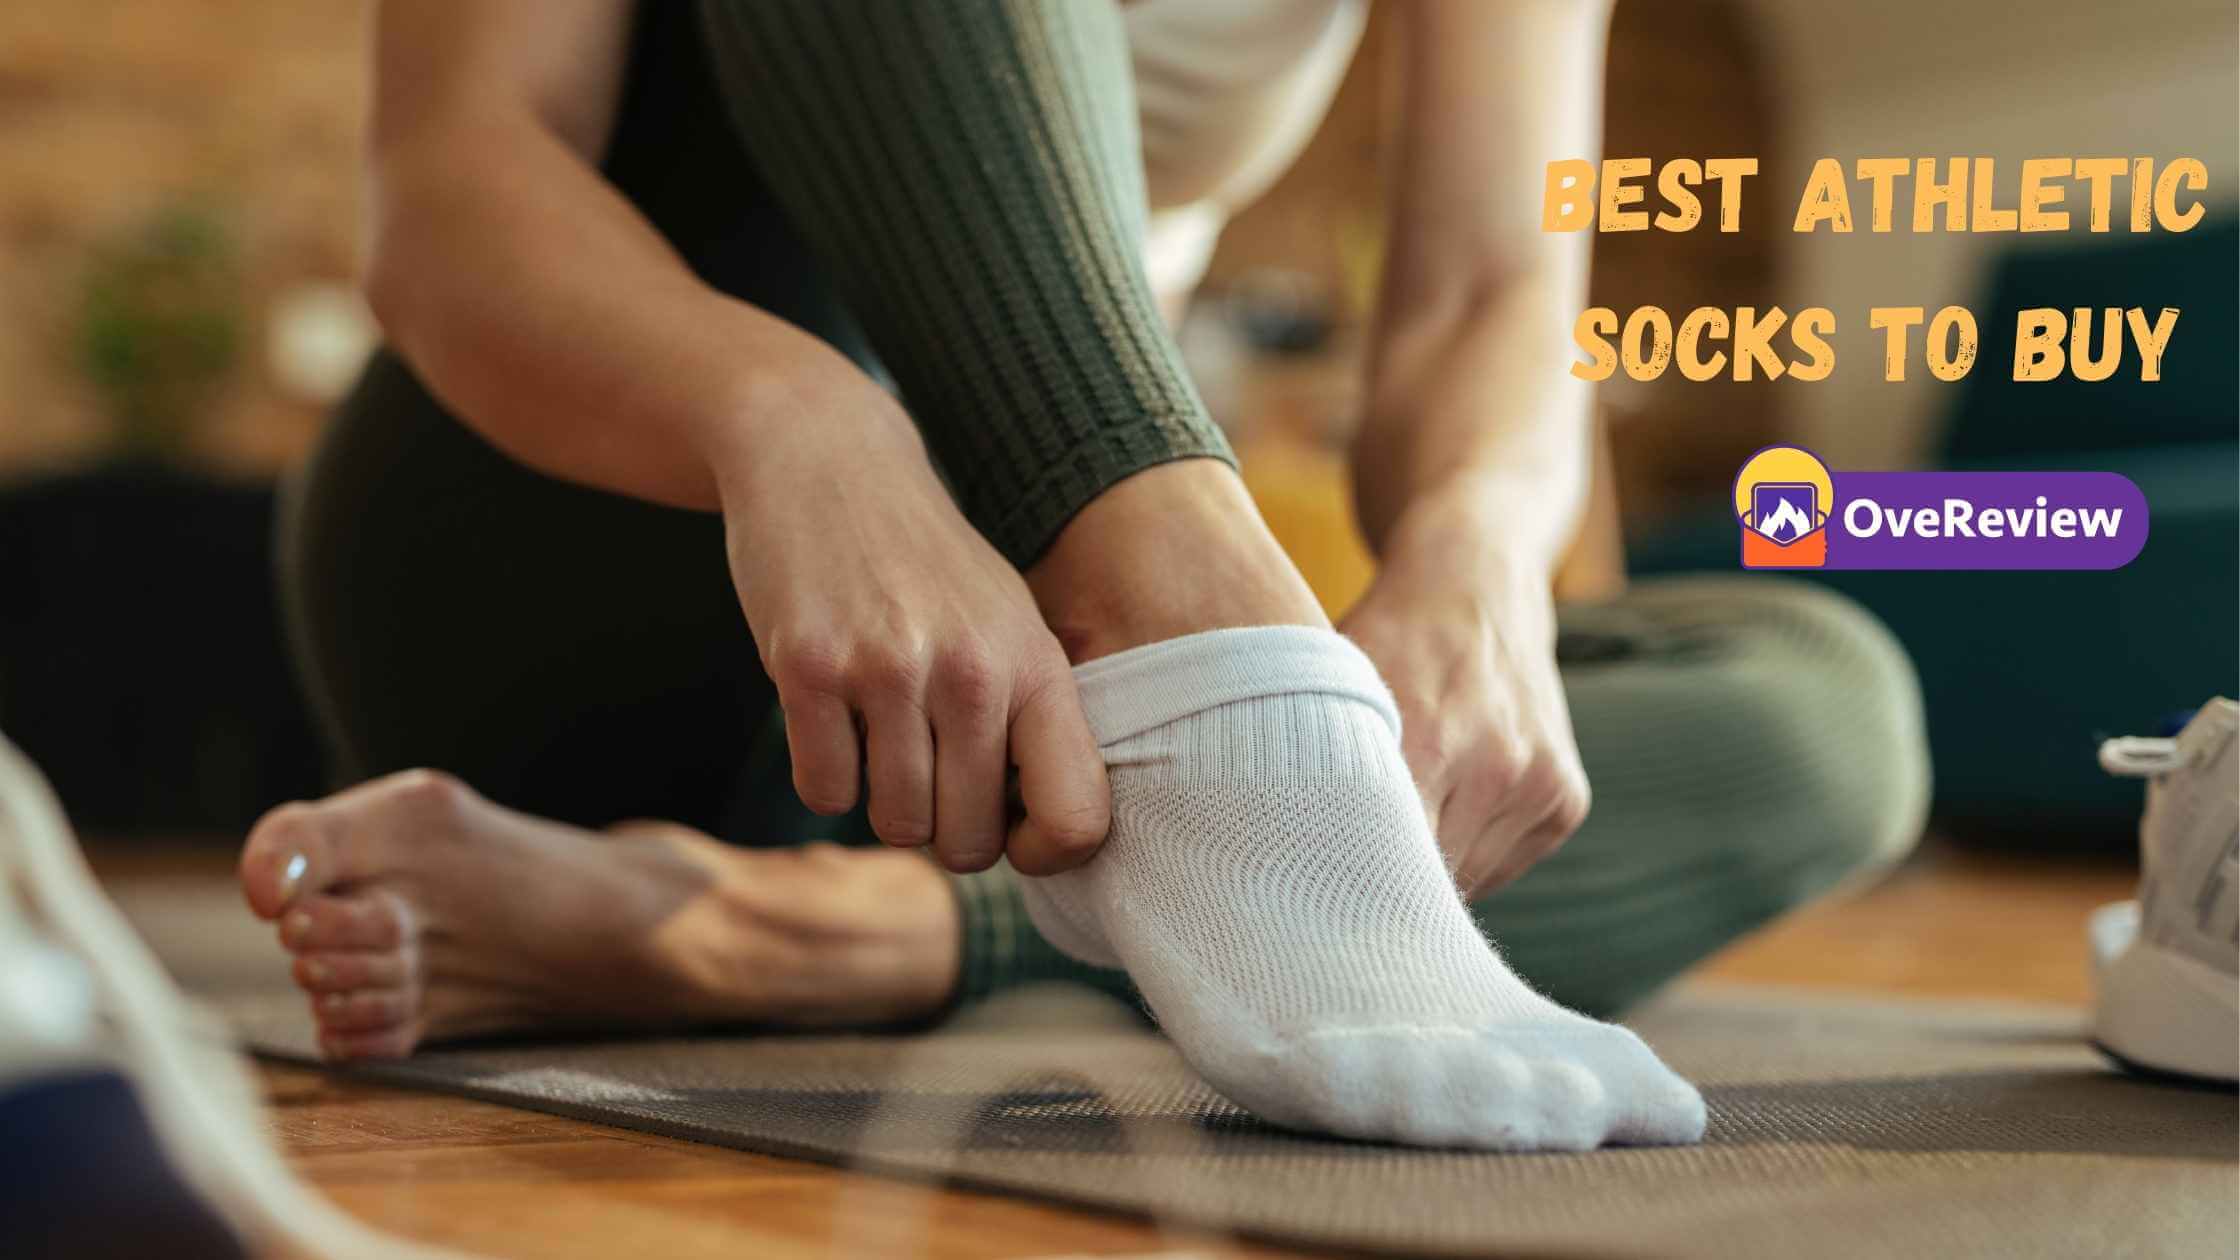 Best athletic socks to buy